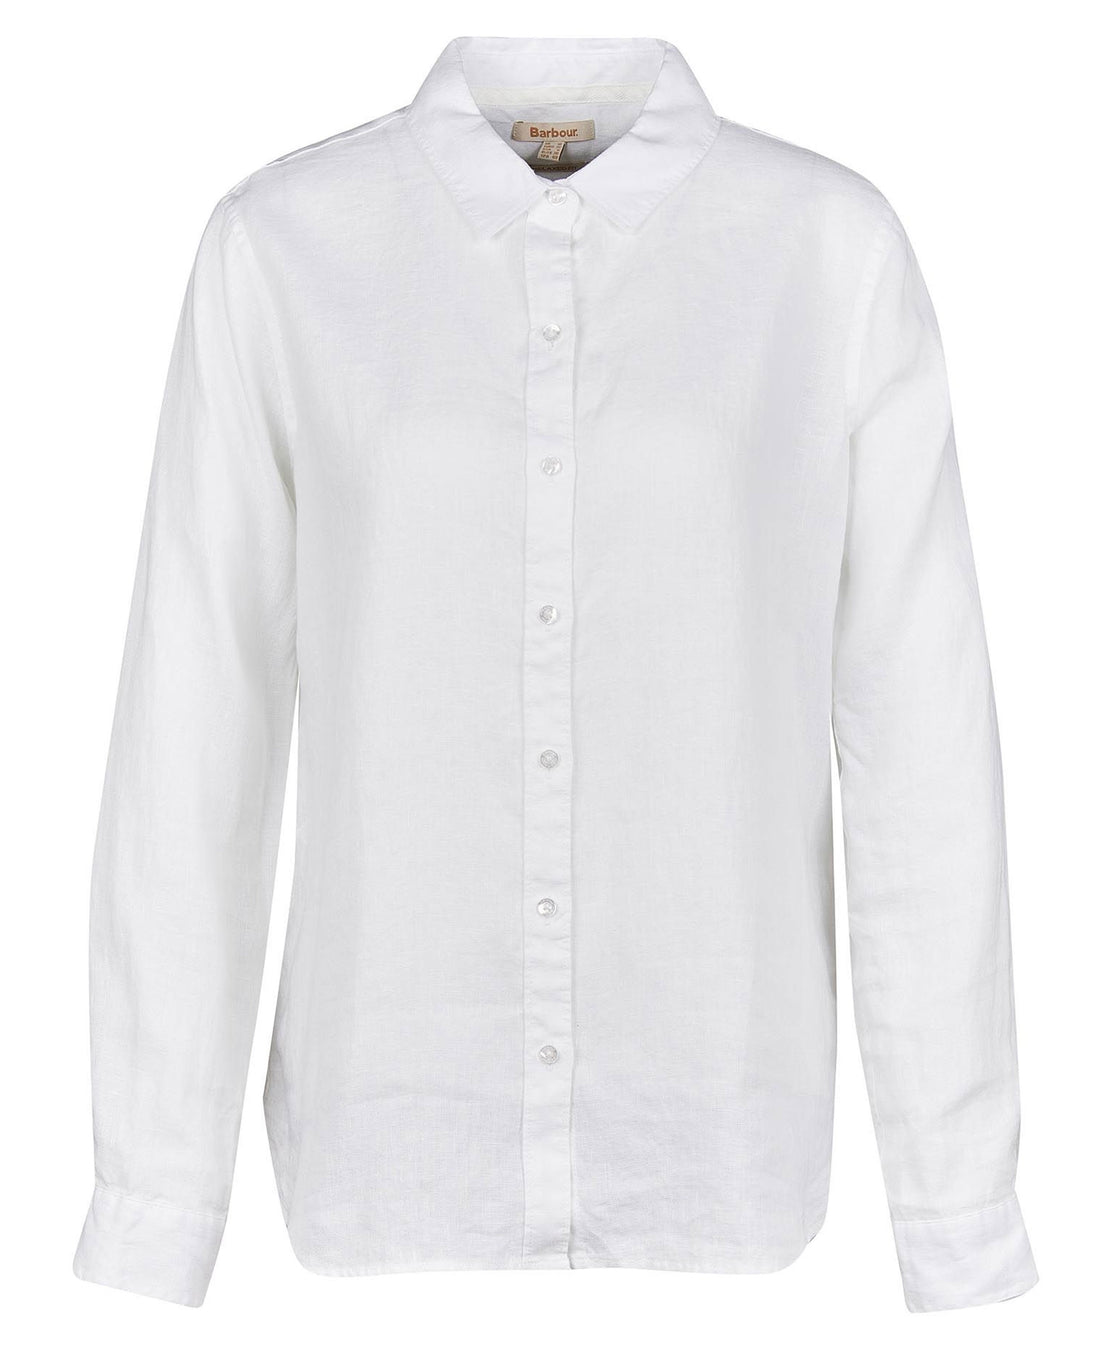 Marine Shirt - White